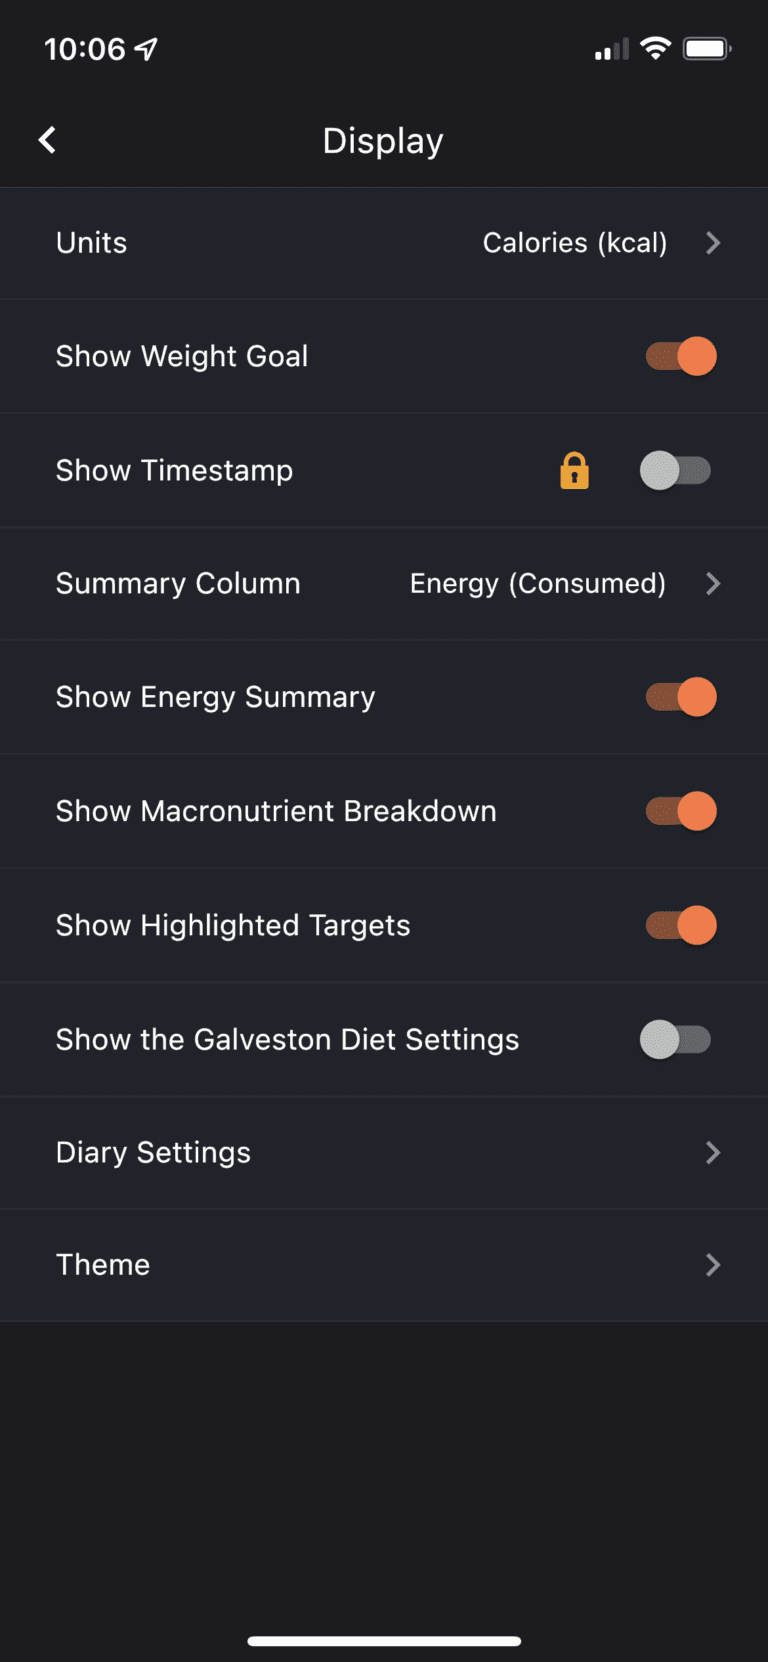 On the mobile app, click show the Galveston Diet Settings slider.